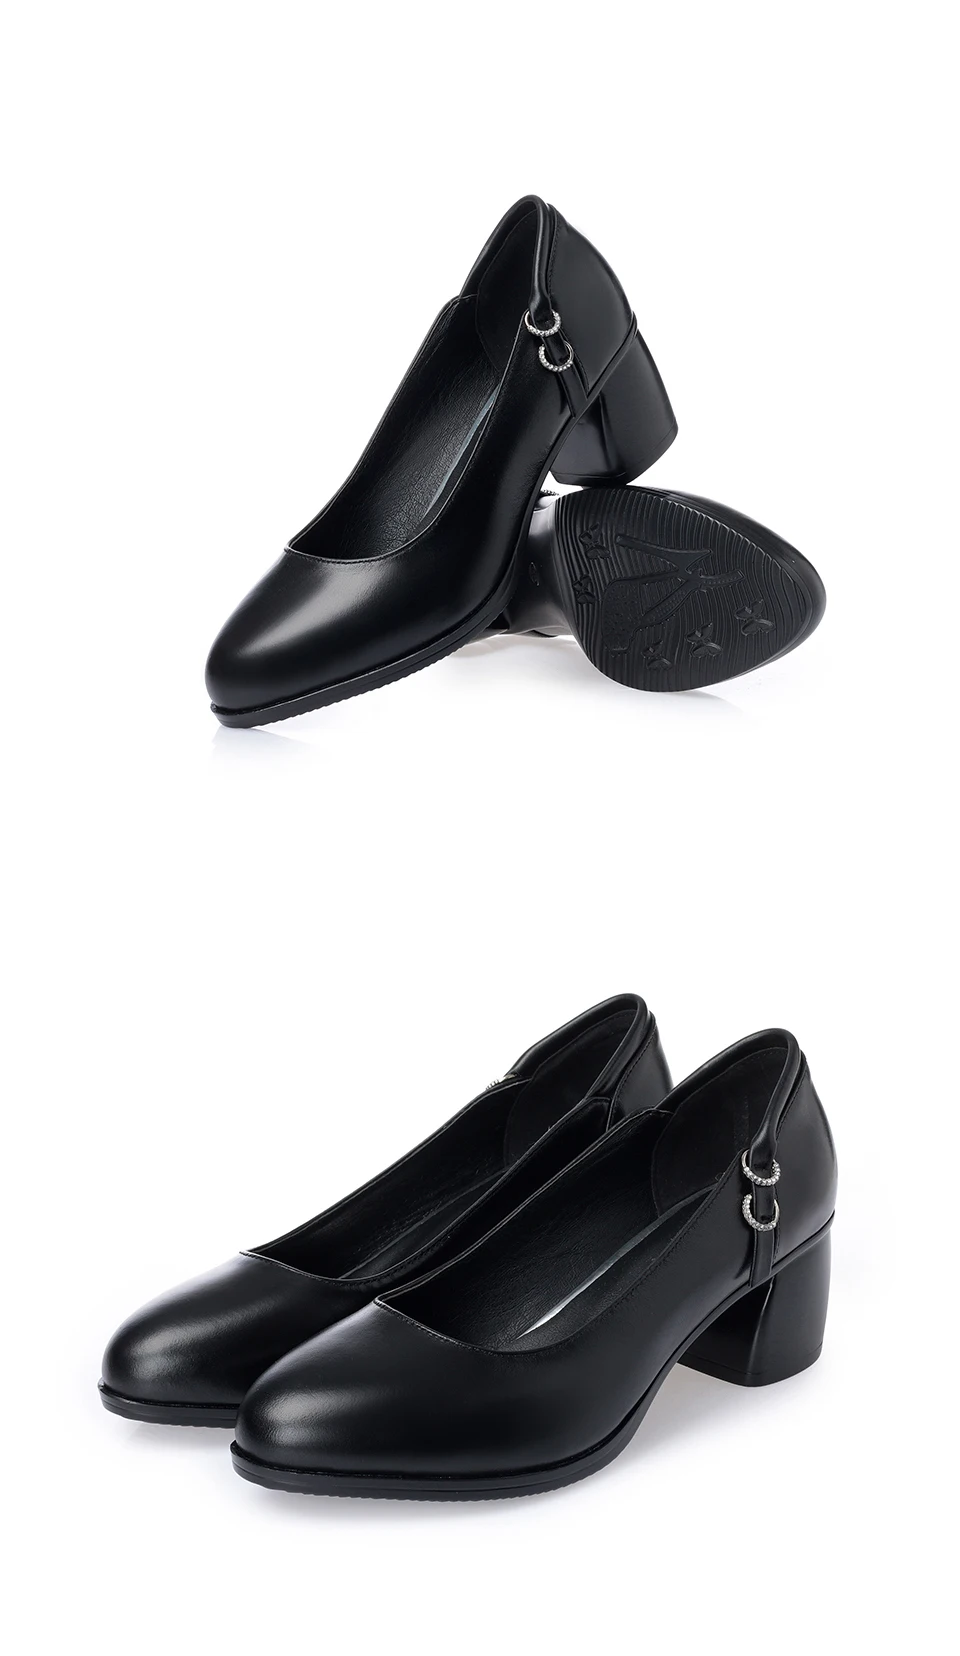 AIYUQI/Женская обувь из натуральной кожи больших размеров, новинка 2019 года, черные модельные туфли на невысоком каблуке, осенняя женская обувь